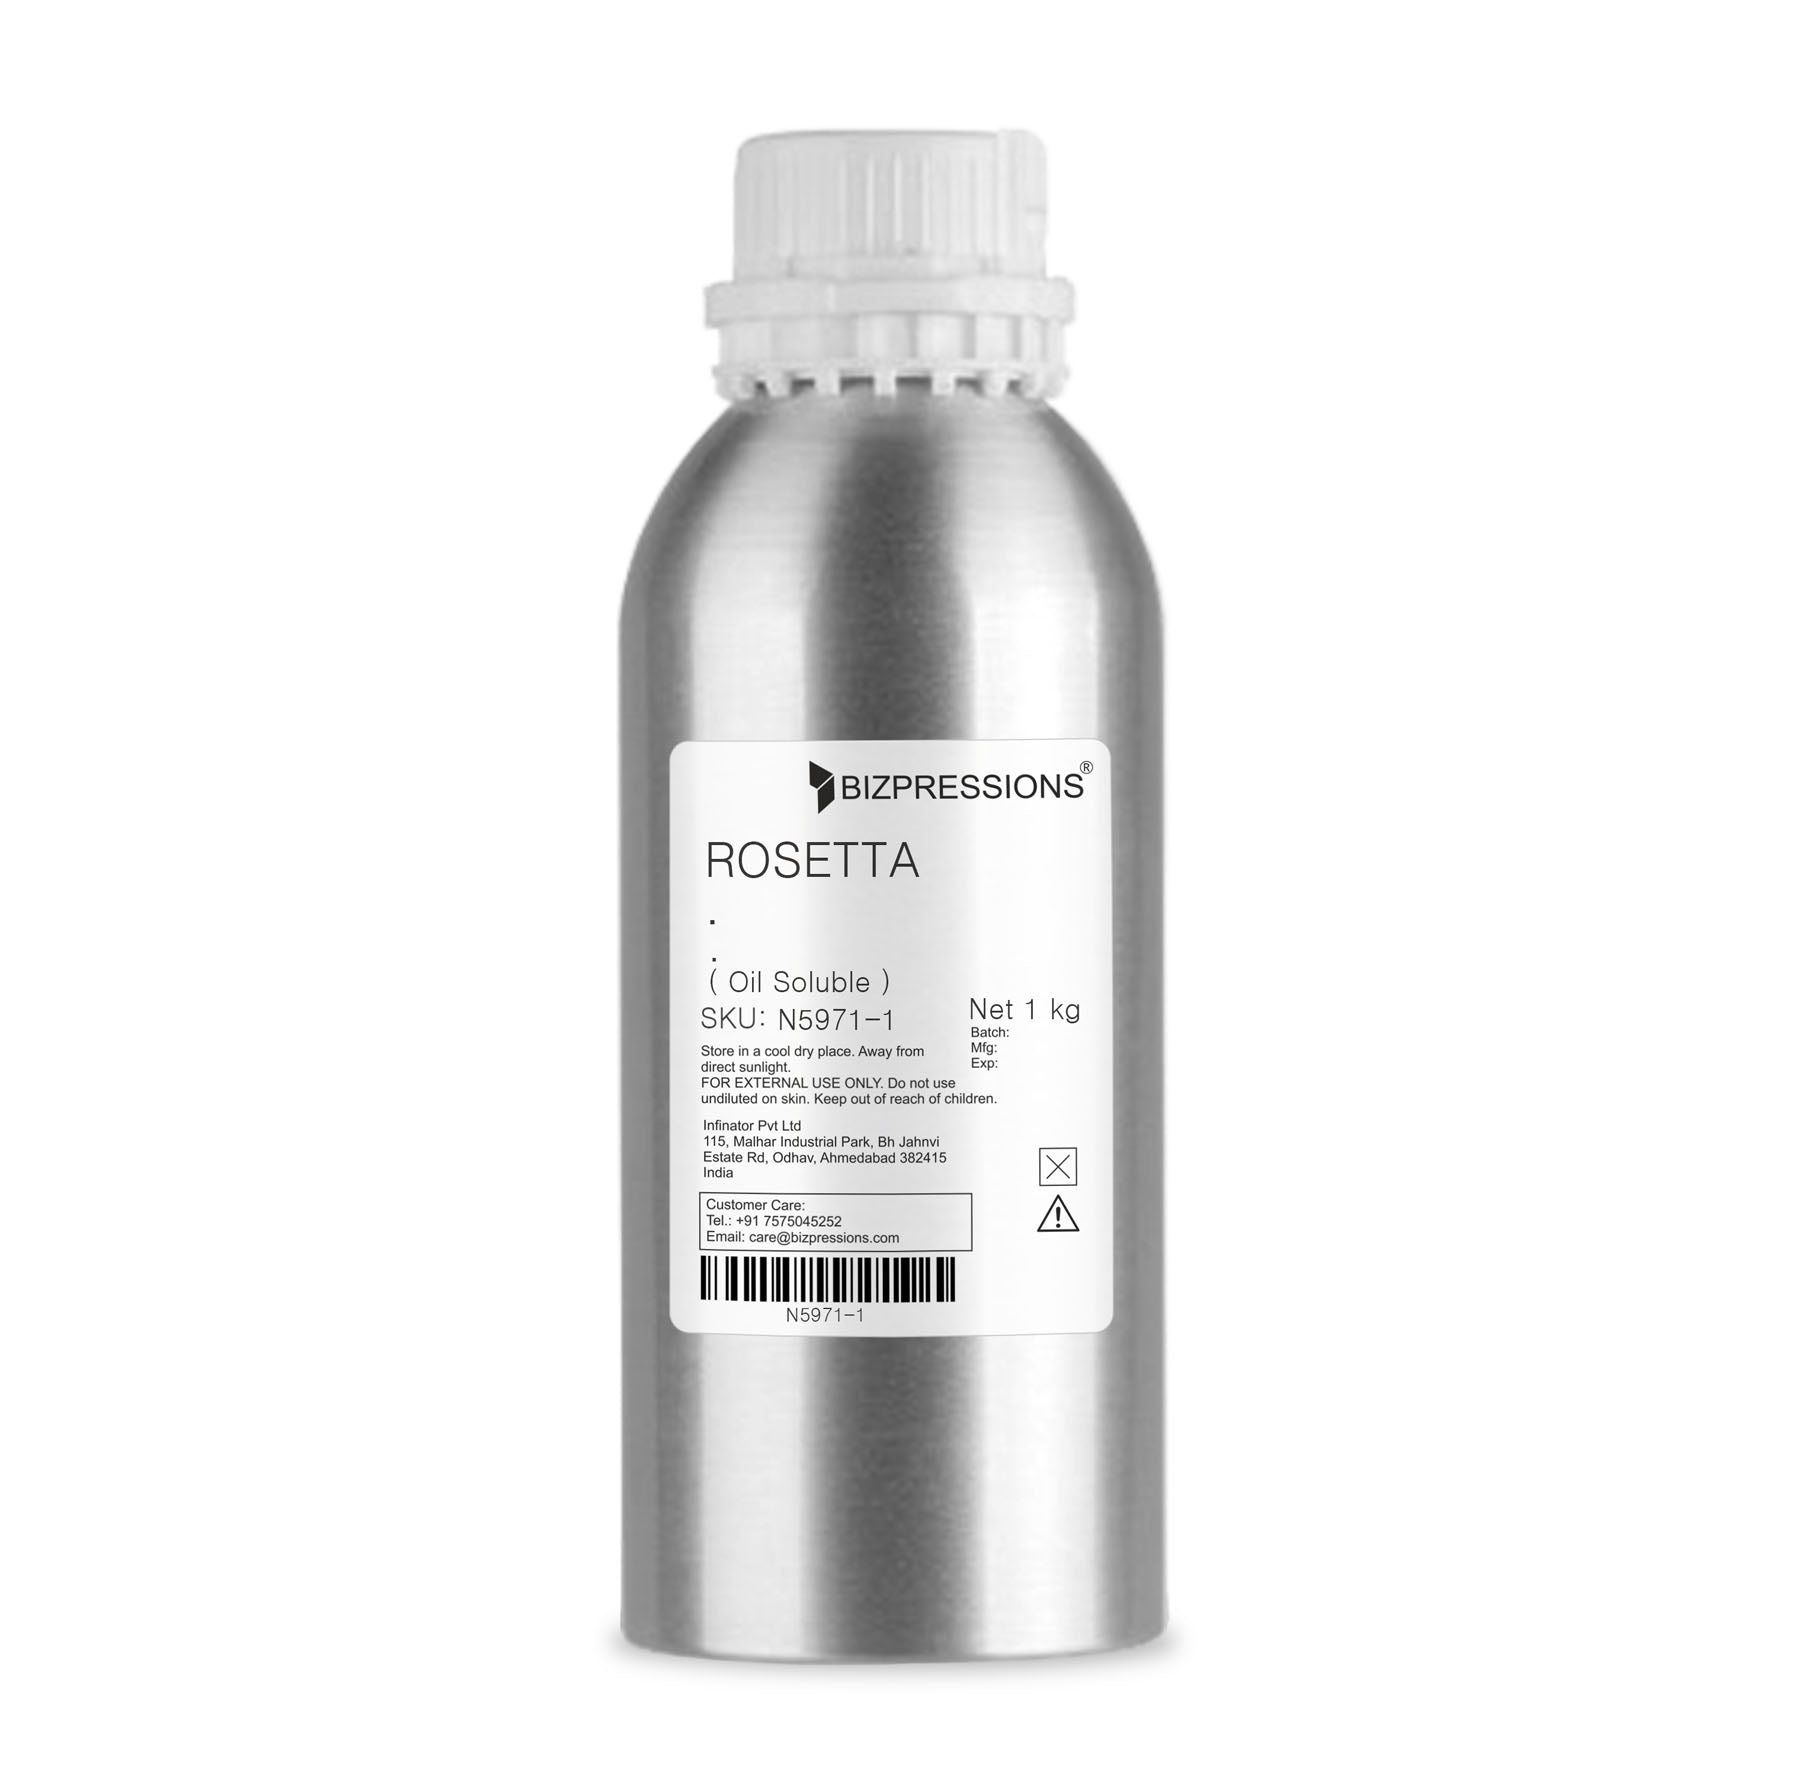 ROSETTA - Fragrance ( Oil Soluble ) - 1 kg